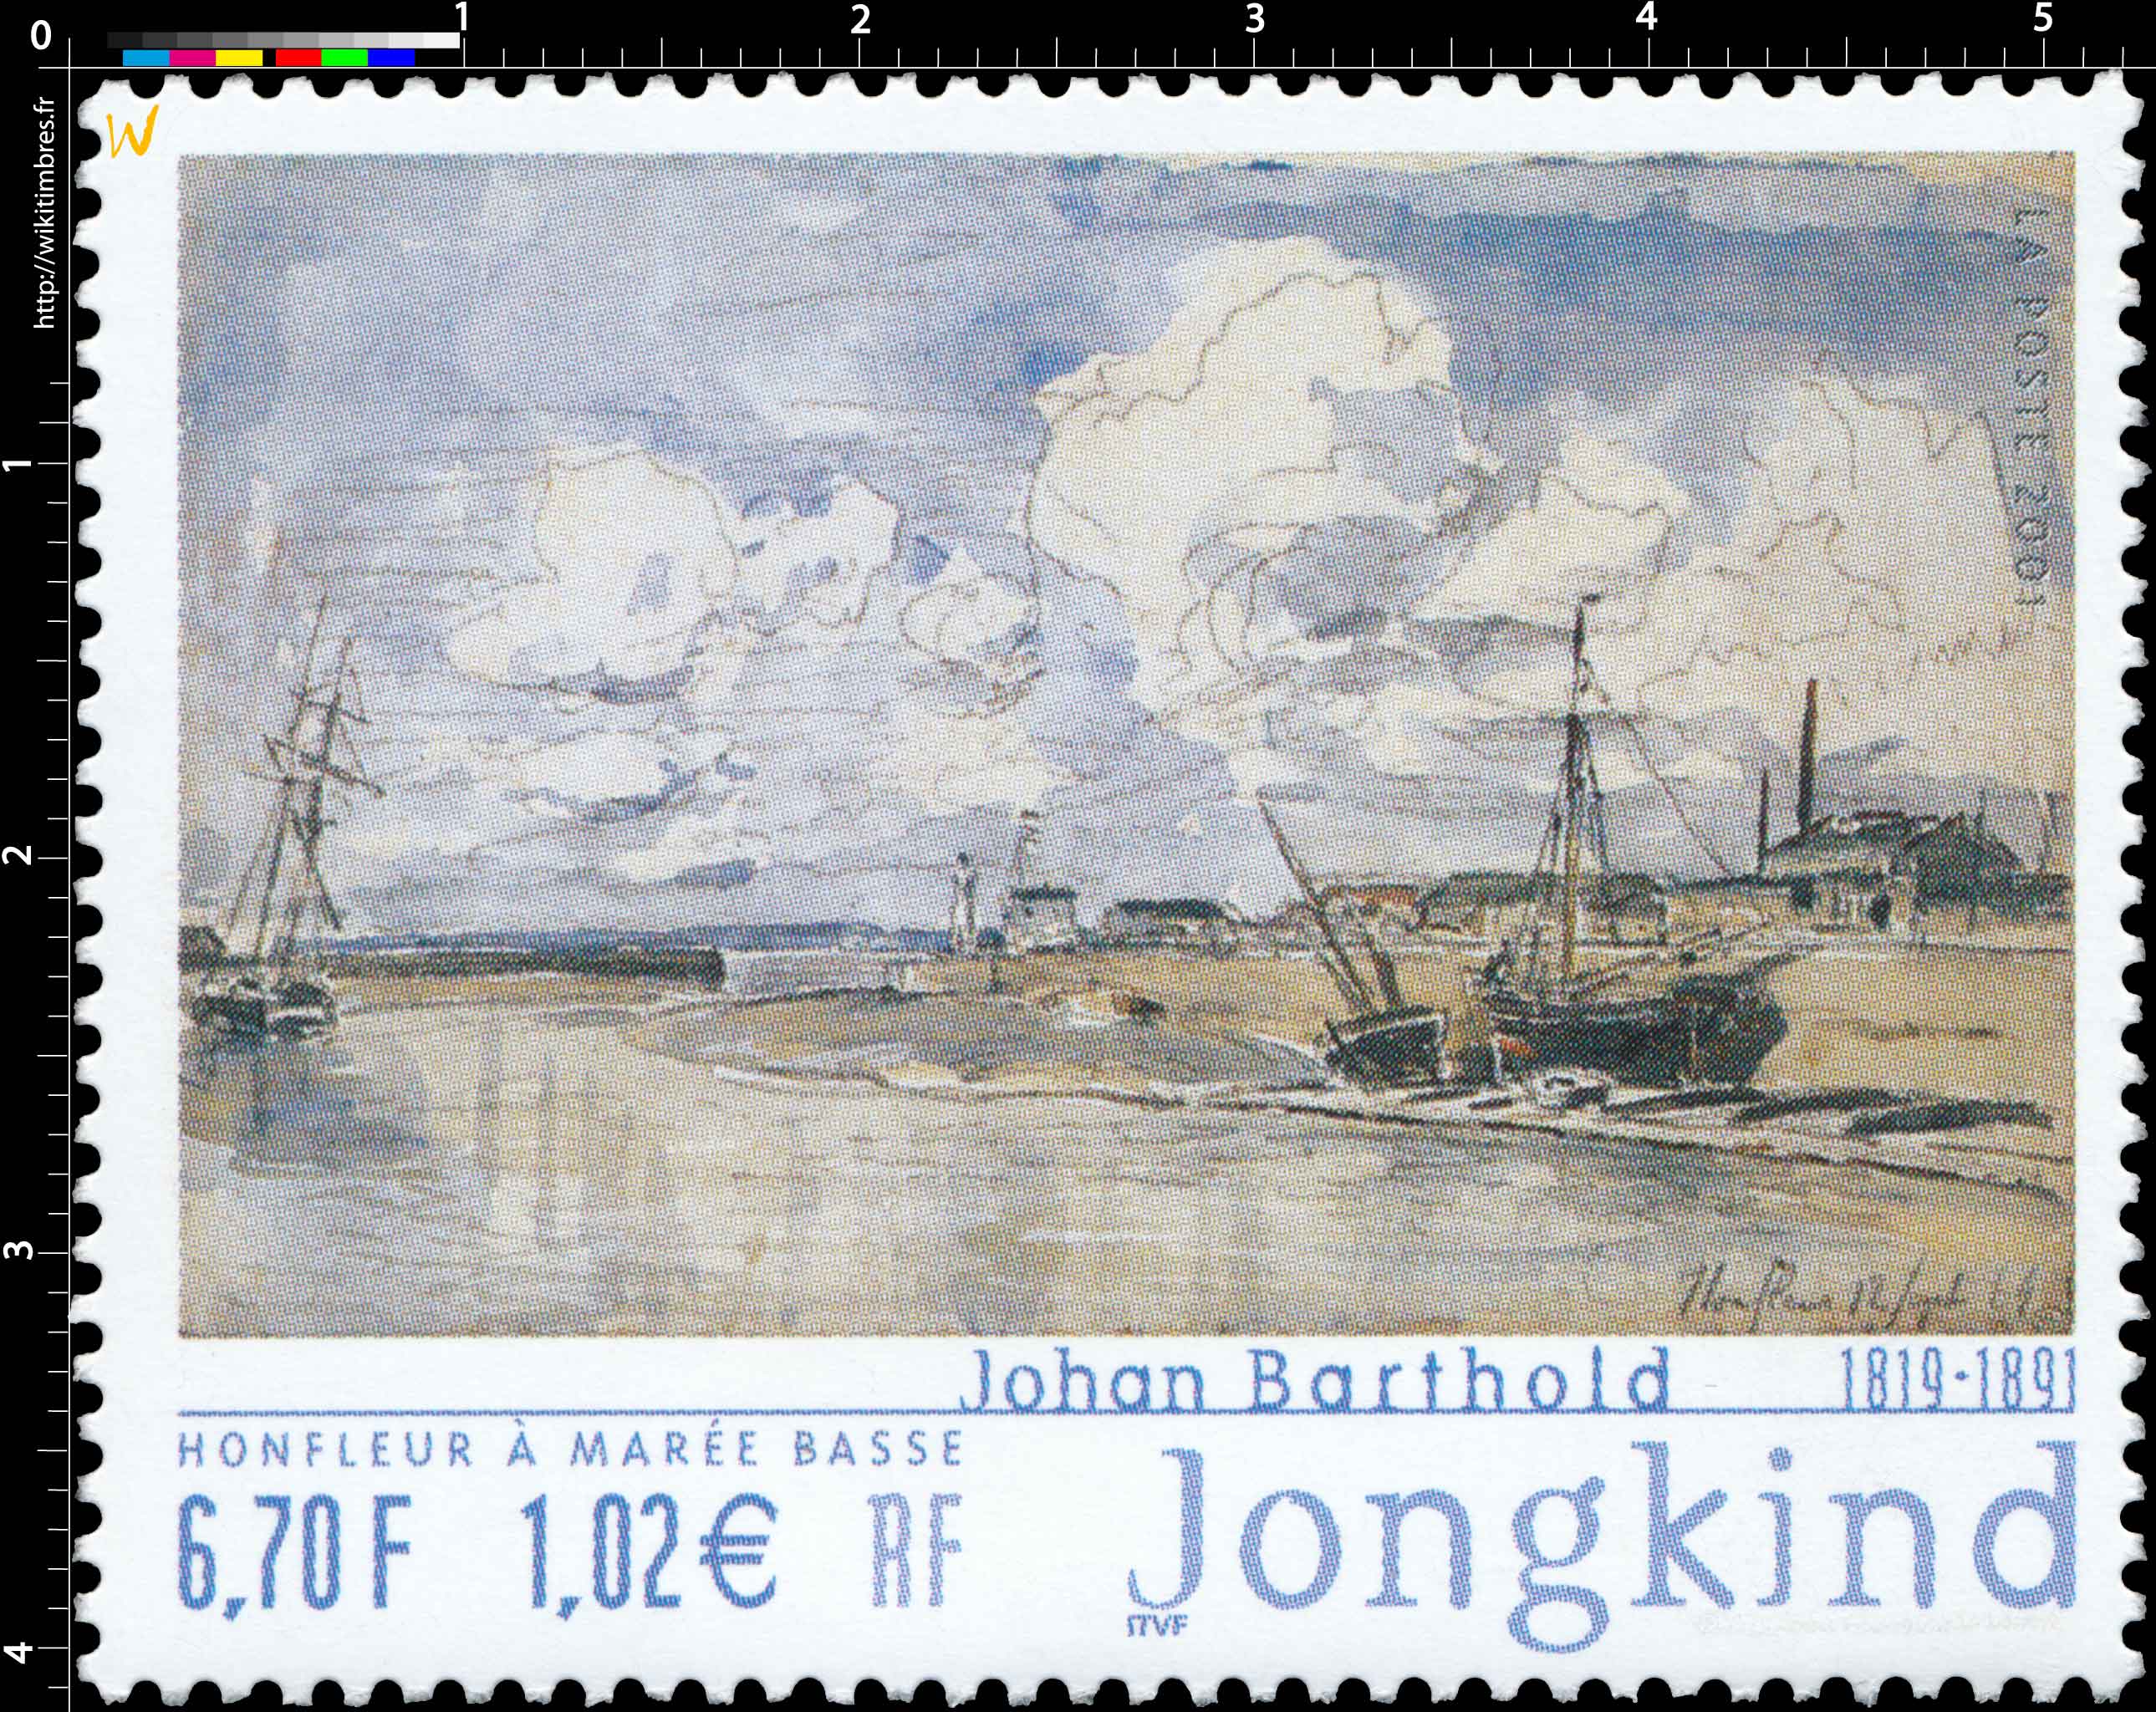 2001 Johan Barthold Jongkind 1819-1891 HONFLEUR À MARÉE BASSE